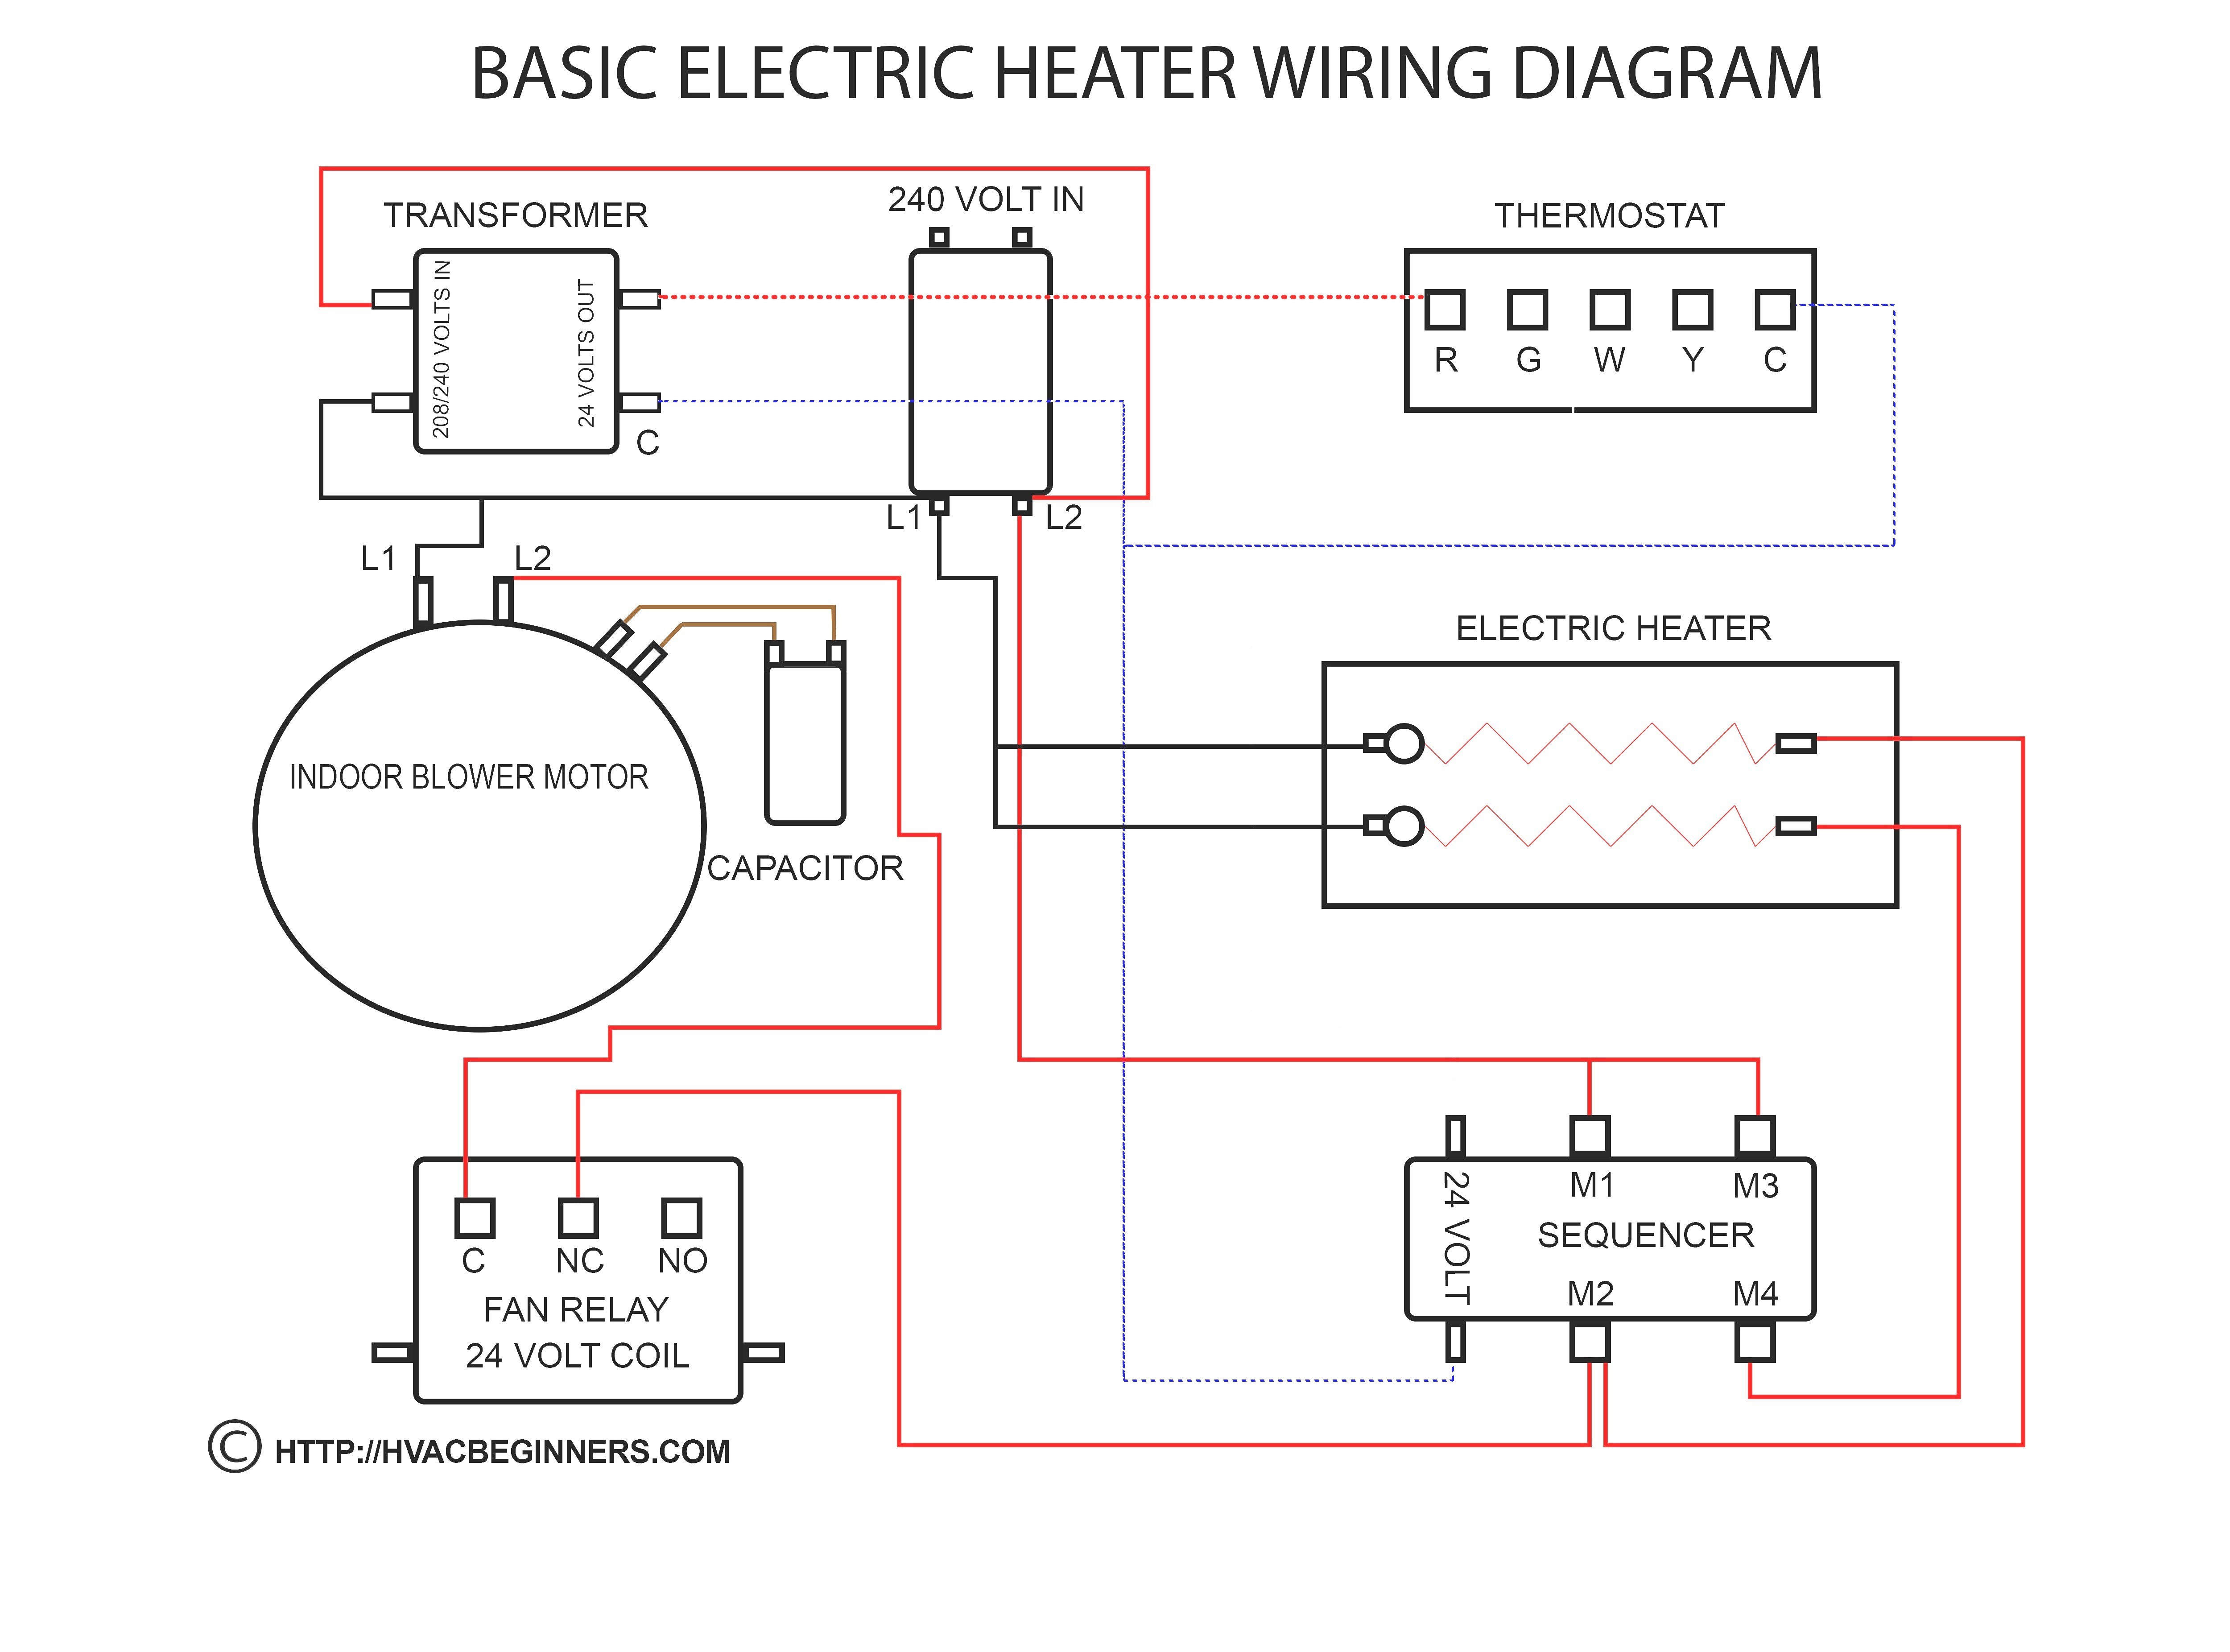 Carrier Heat Pump Wiring Diagram Mcquay Air Conditioner Wiring Diagram Fresh Carrier Split Air Of Carrier Heat Pump Wiring Diagram